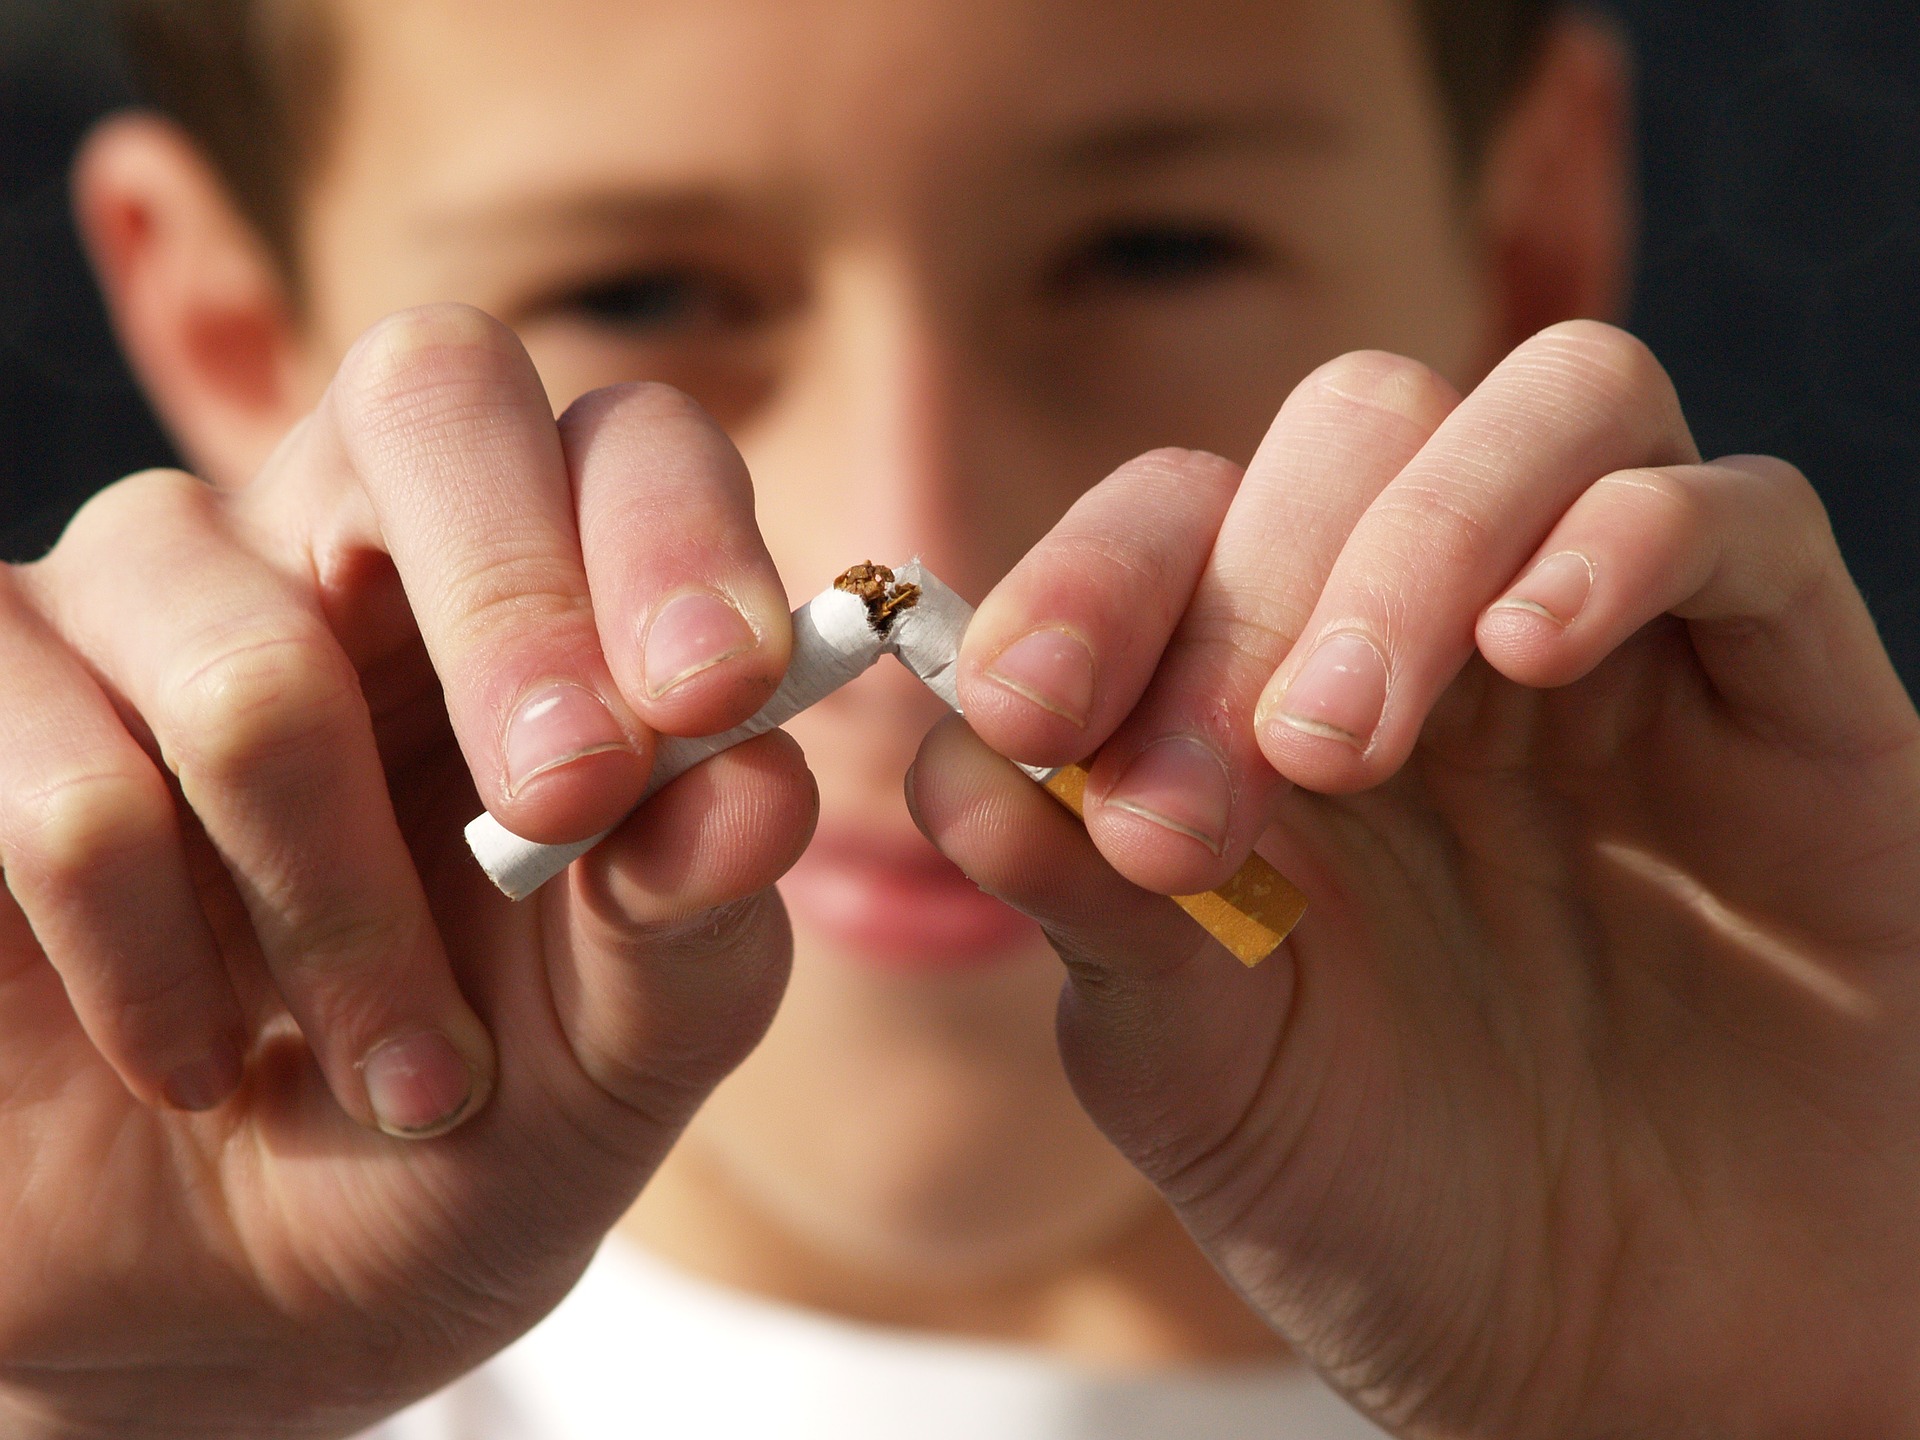 Debatt: ”Tobakspandemin skördar fler liv än corona”